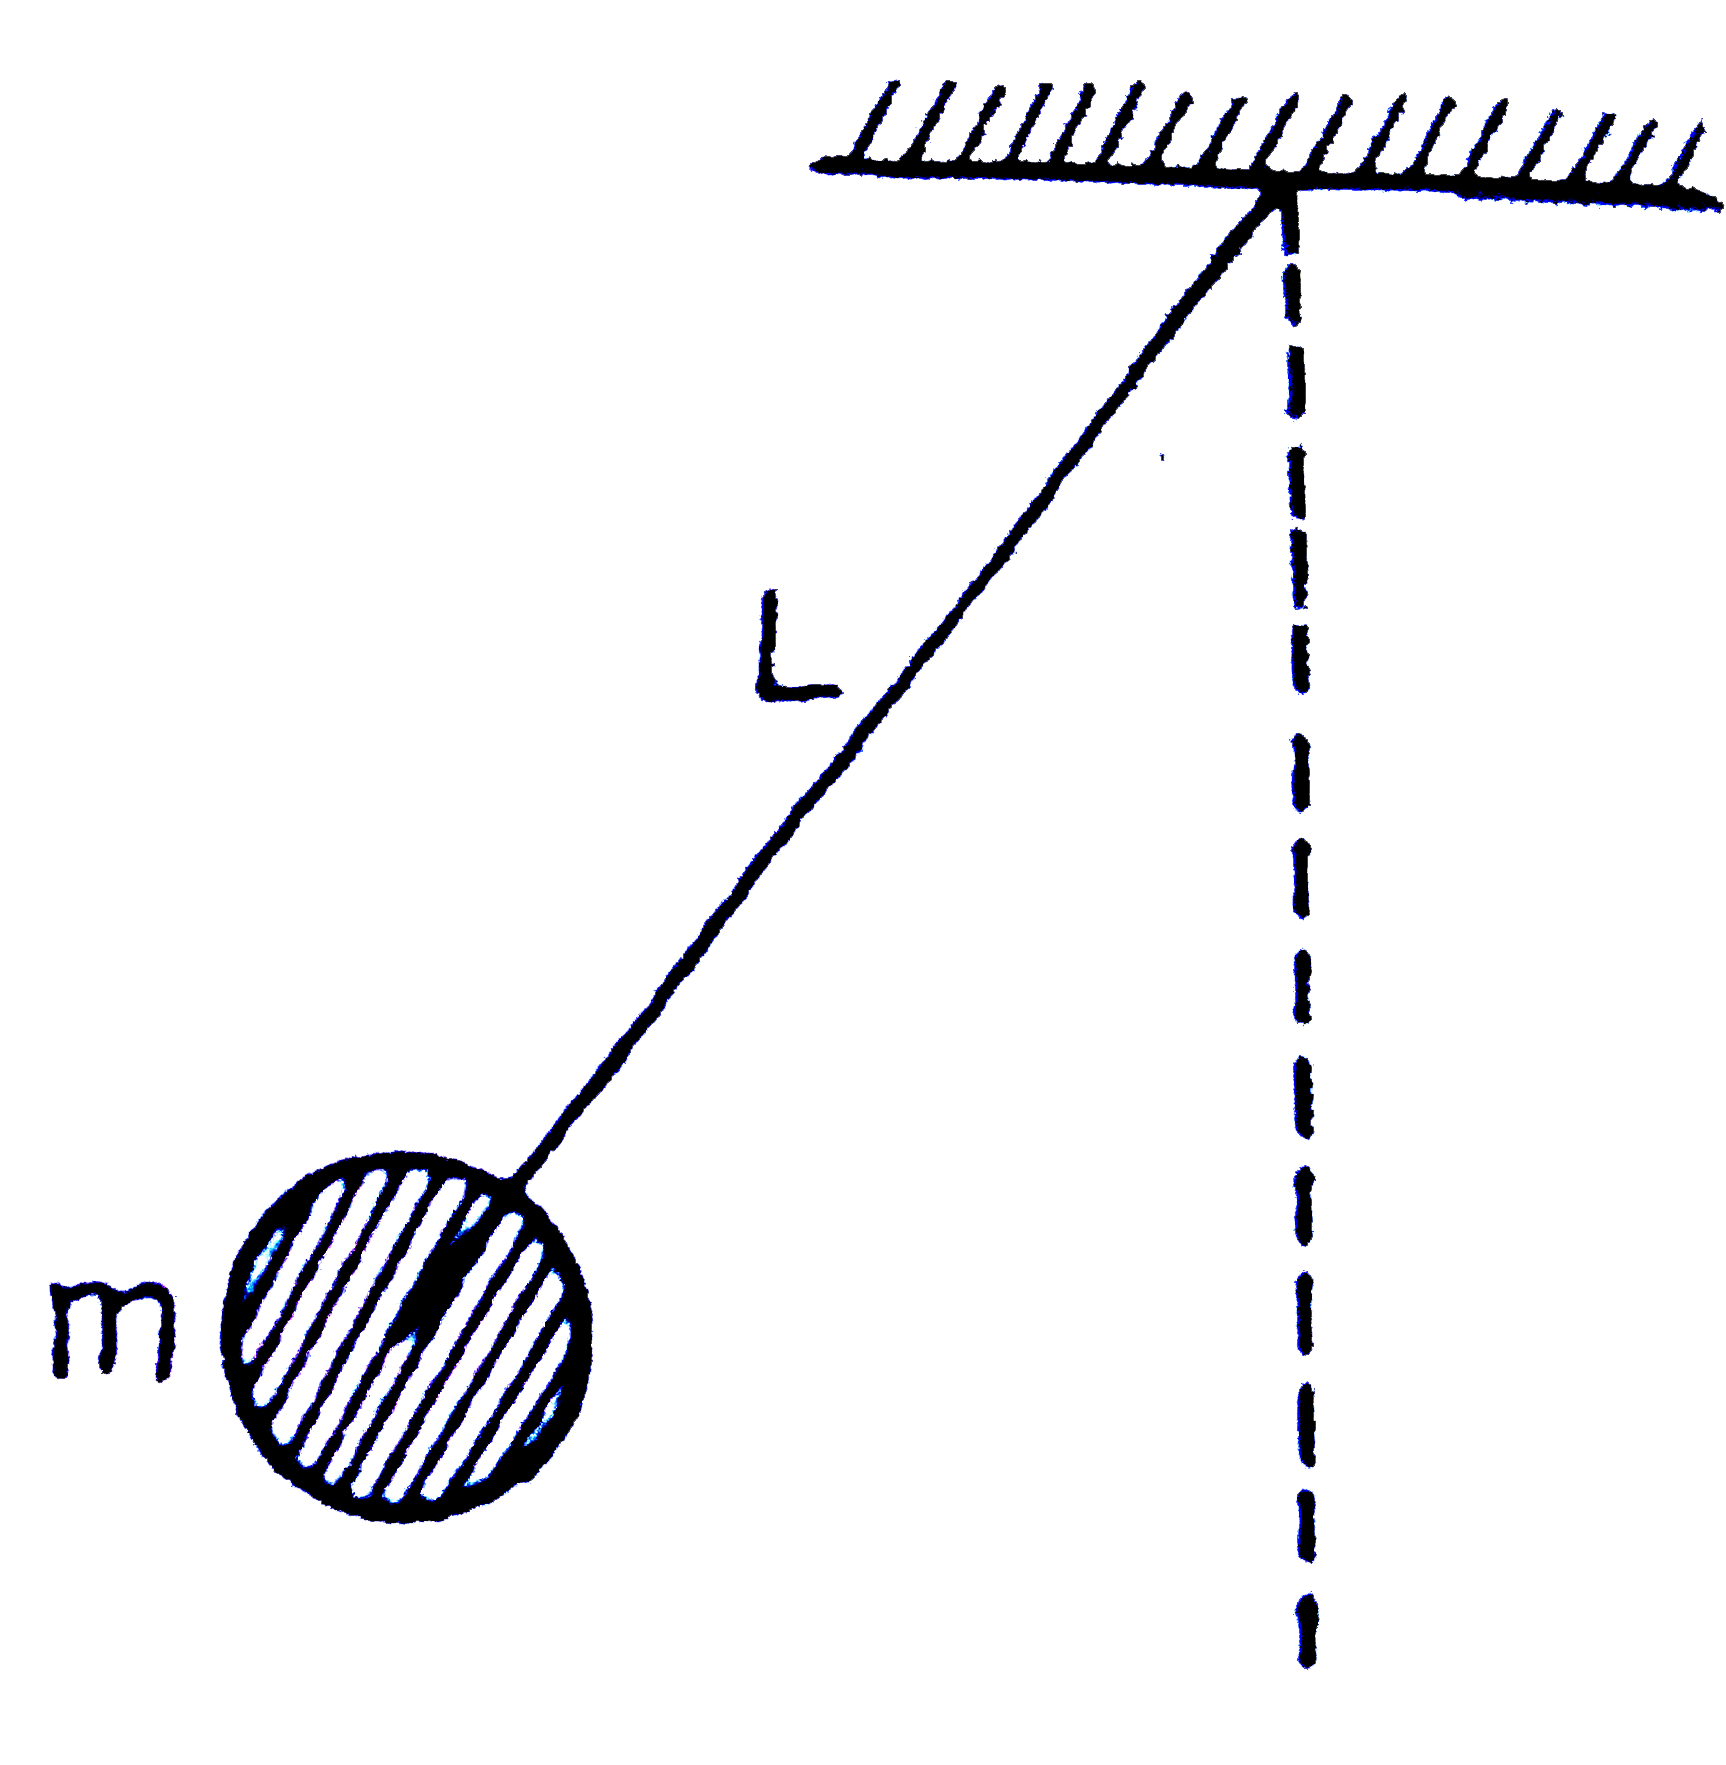 0.5 मीटर लम्बाई (L) की डोरी के एक सिरे पर 0.5 किग्रा वृव्यमान (m) की एक गेंद बंधी है  यह गेंद क्षैतिज ताल में ऊर्ध्वाधर अक्ष में परितः - वतीय पथ पर घूमती है। डोरी में लग सकने वाला अधिकतम तनाव 324 न्यून्टन है। गेंद के कोणीय वेग का अधिकतम संभाविकट मान ( रेडियन/सेकण्ड में ) है :